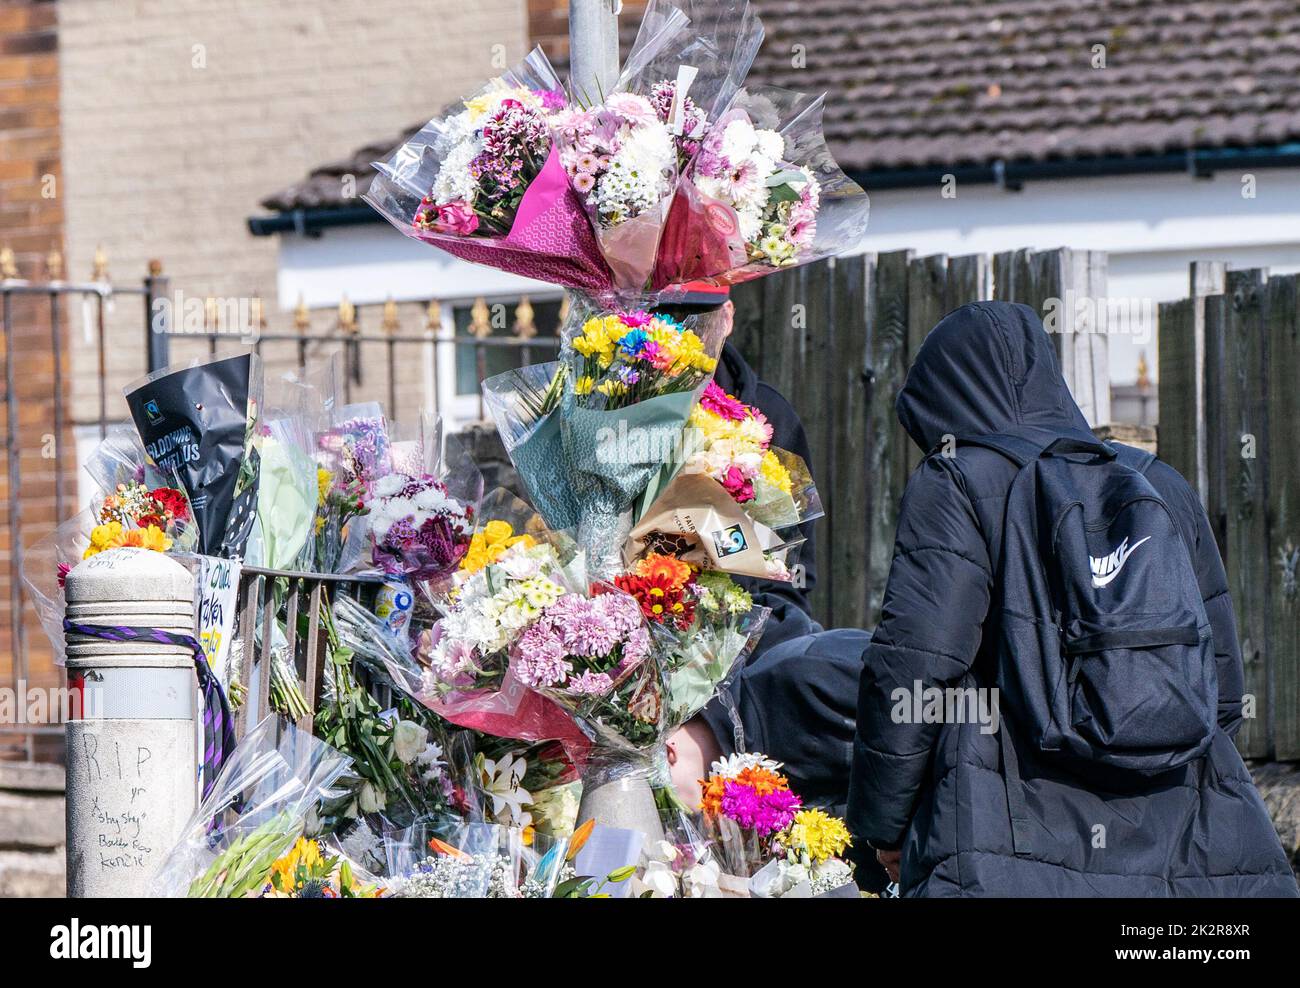 Un élève voit des hommages floraux sur la scène de Woodhouse Hill, à Huddersfield, où Khayri McLean, jeune garçon de 15 ans, a été mortellement poignardé devant ses portes. Date de la photo: Vendredi 23 septembre 2022. Banque D'Images